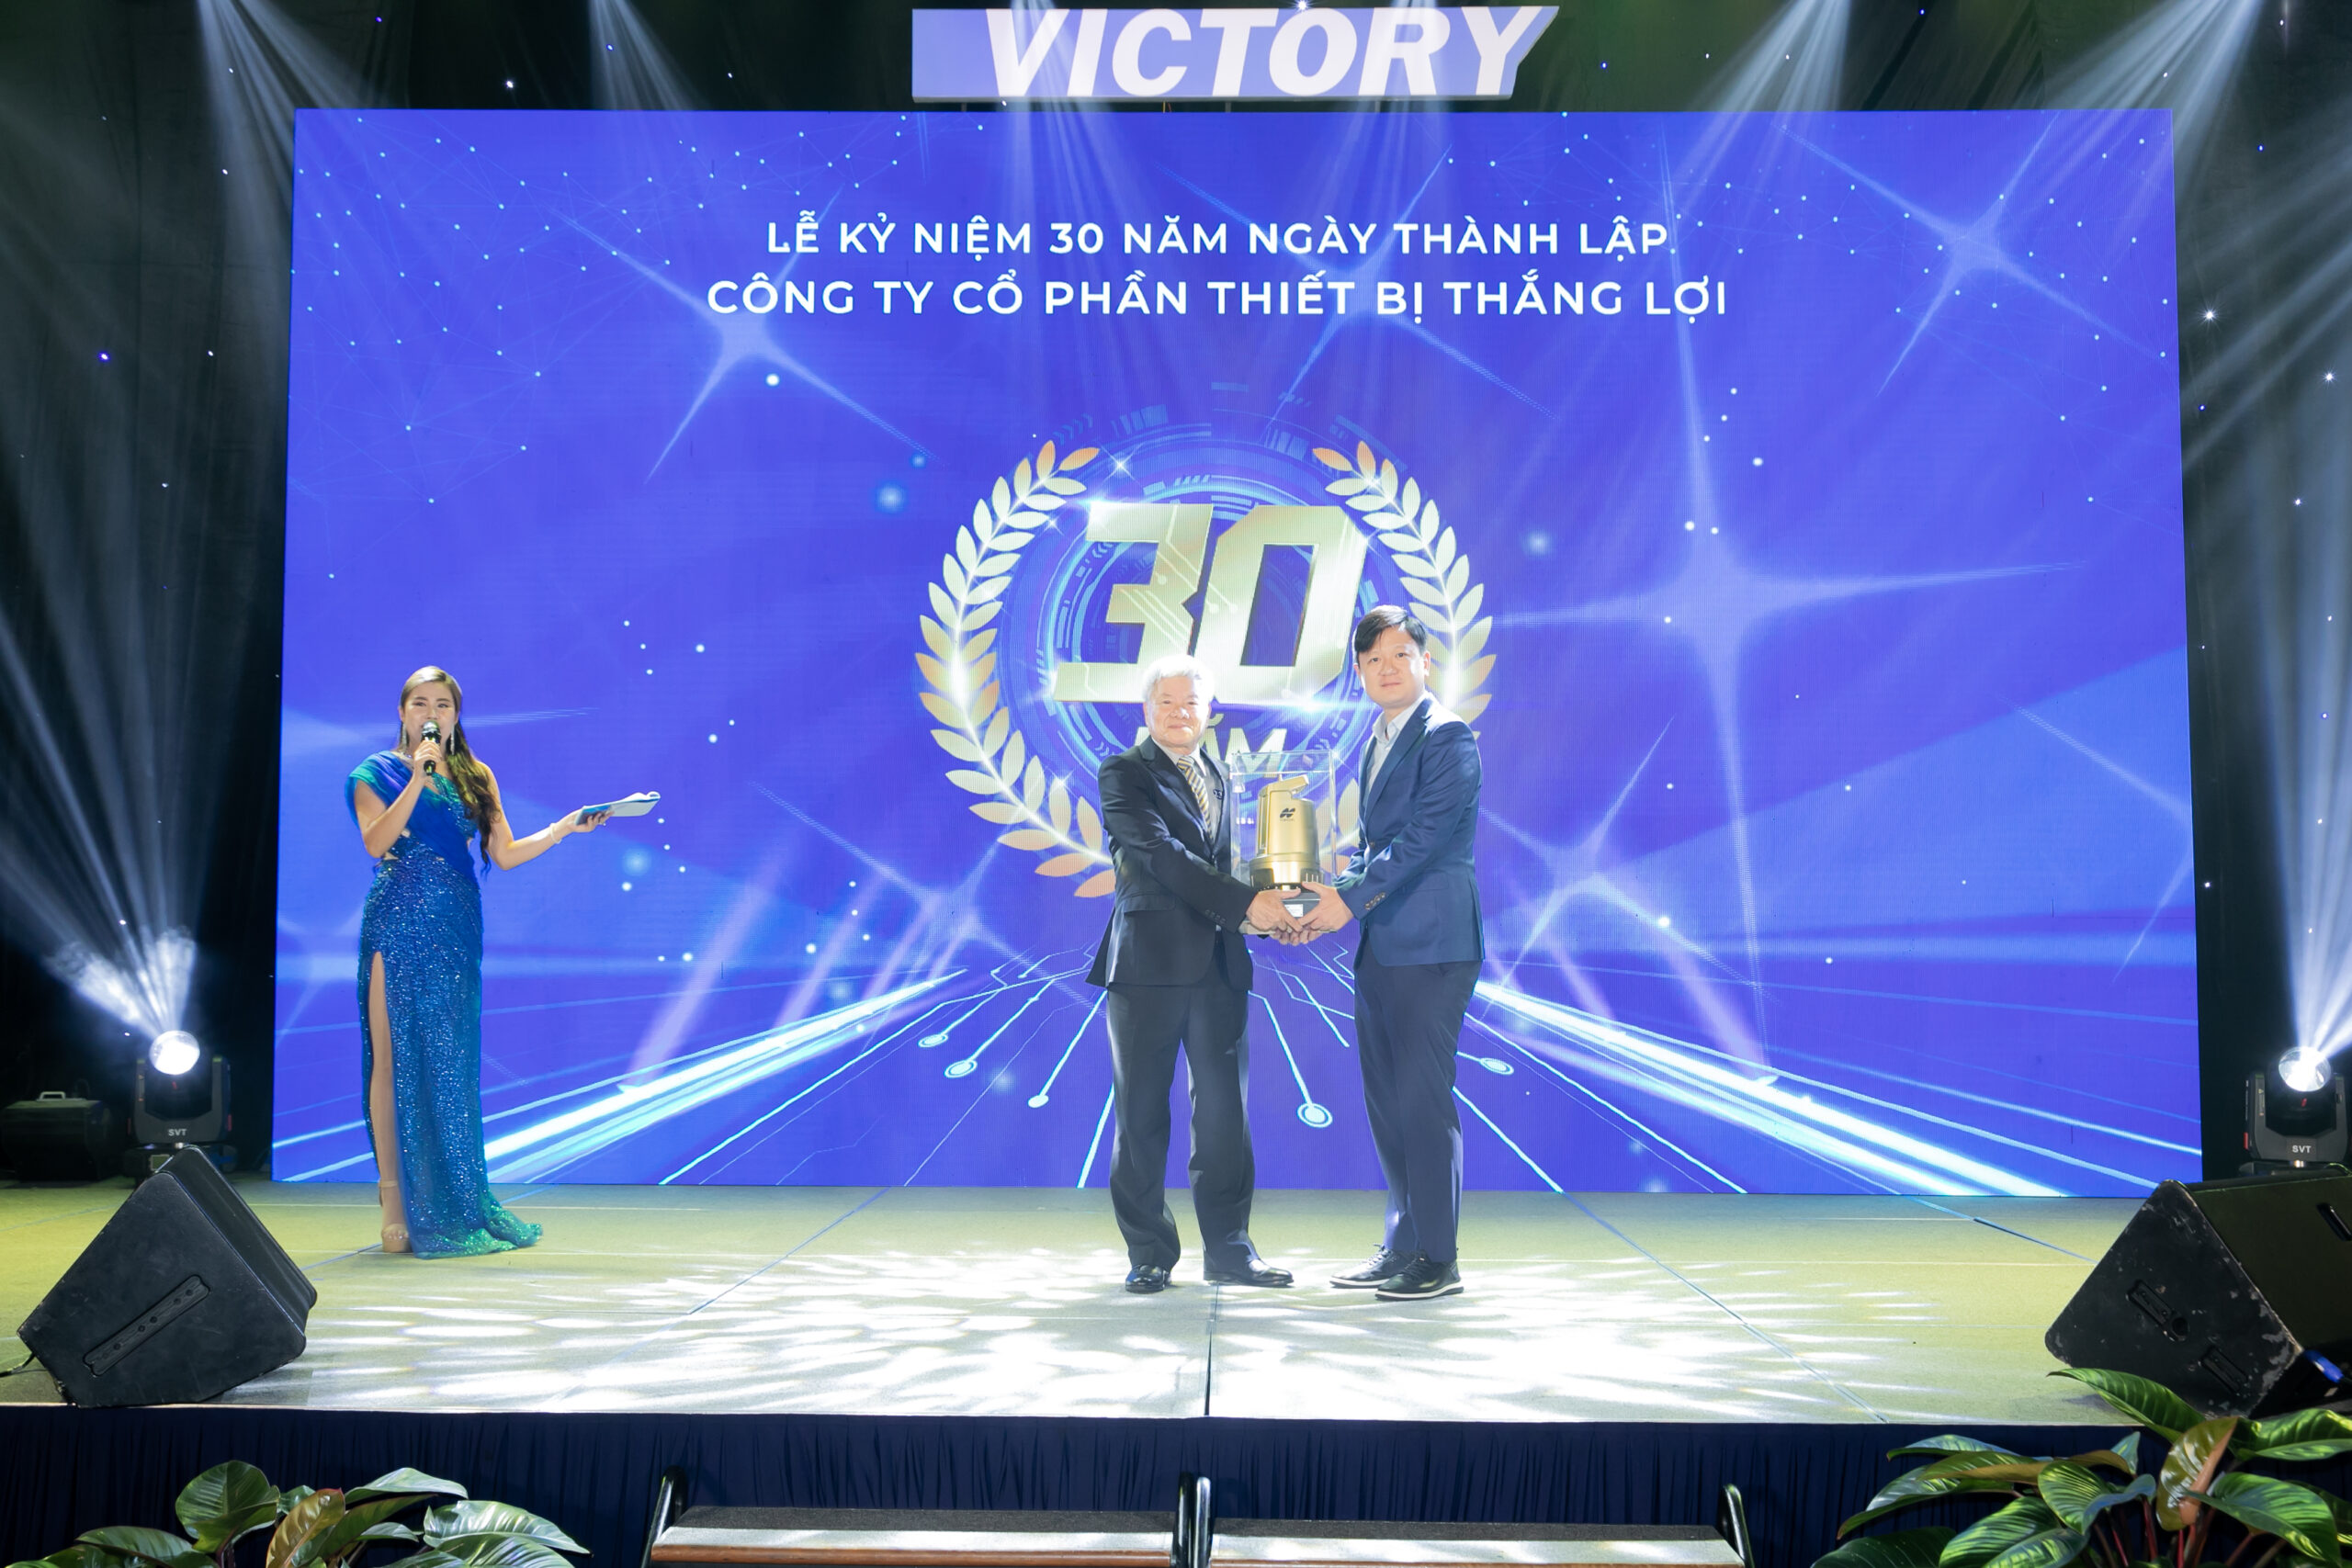 Chủ tịch công ty thắng lợi - Nguyễn Trọng Khôi nhận quà lưu niệm từ tập đoàn Topcon tại buổi lễ kỉ niệm 30 năm thành lập